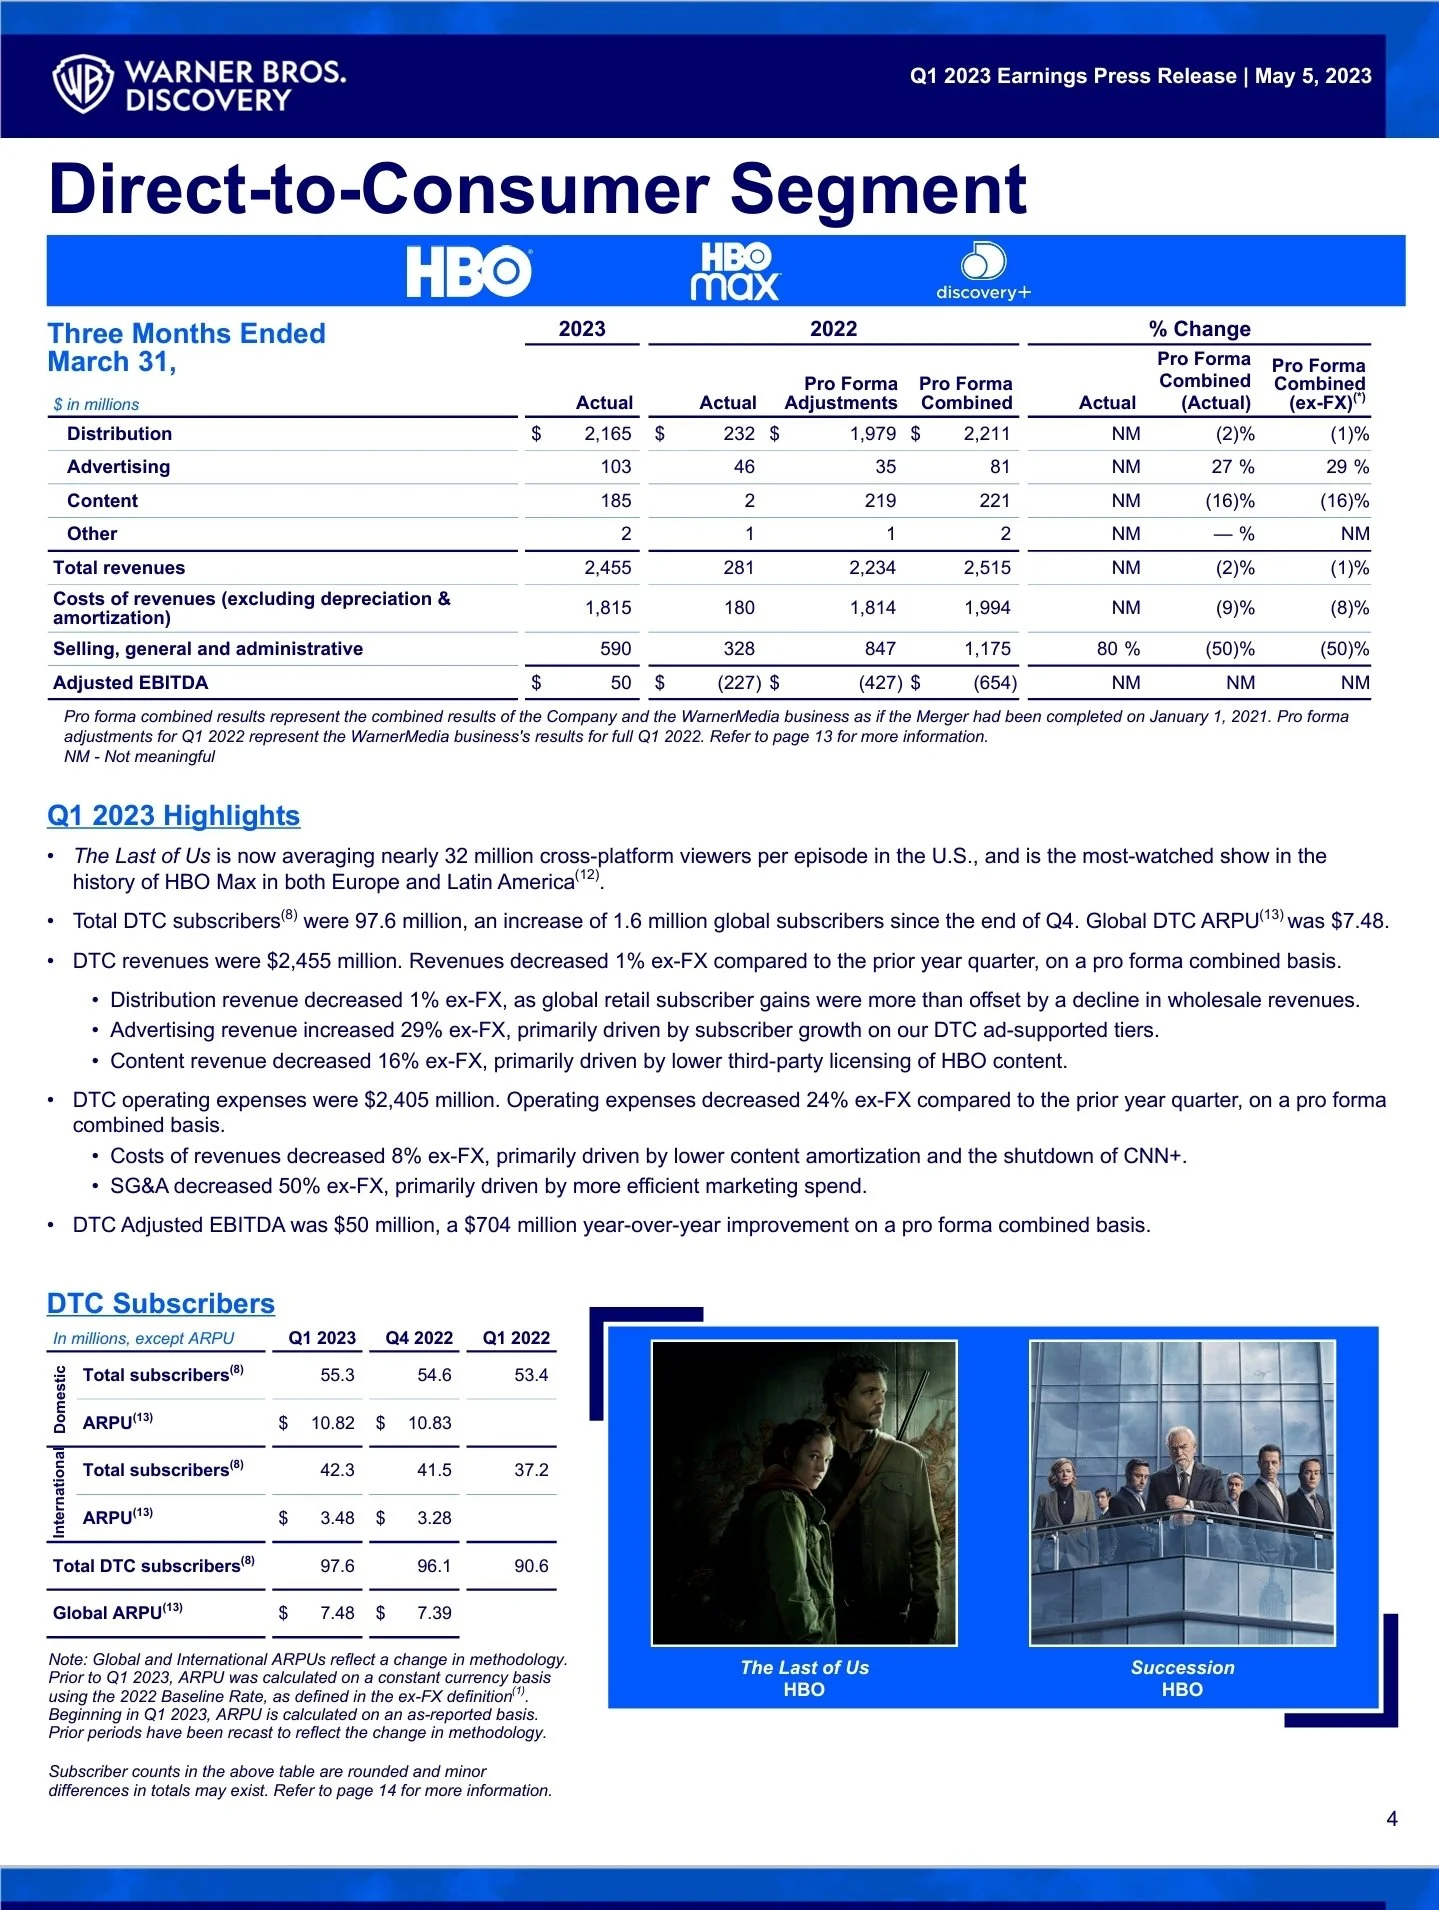 Сериал The Last of Us стал самым популярным шоу HBO в Европе и Латинской Америке - фото 1